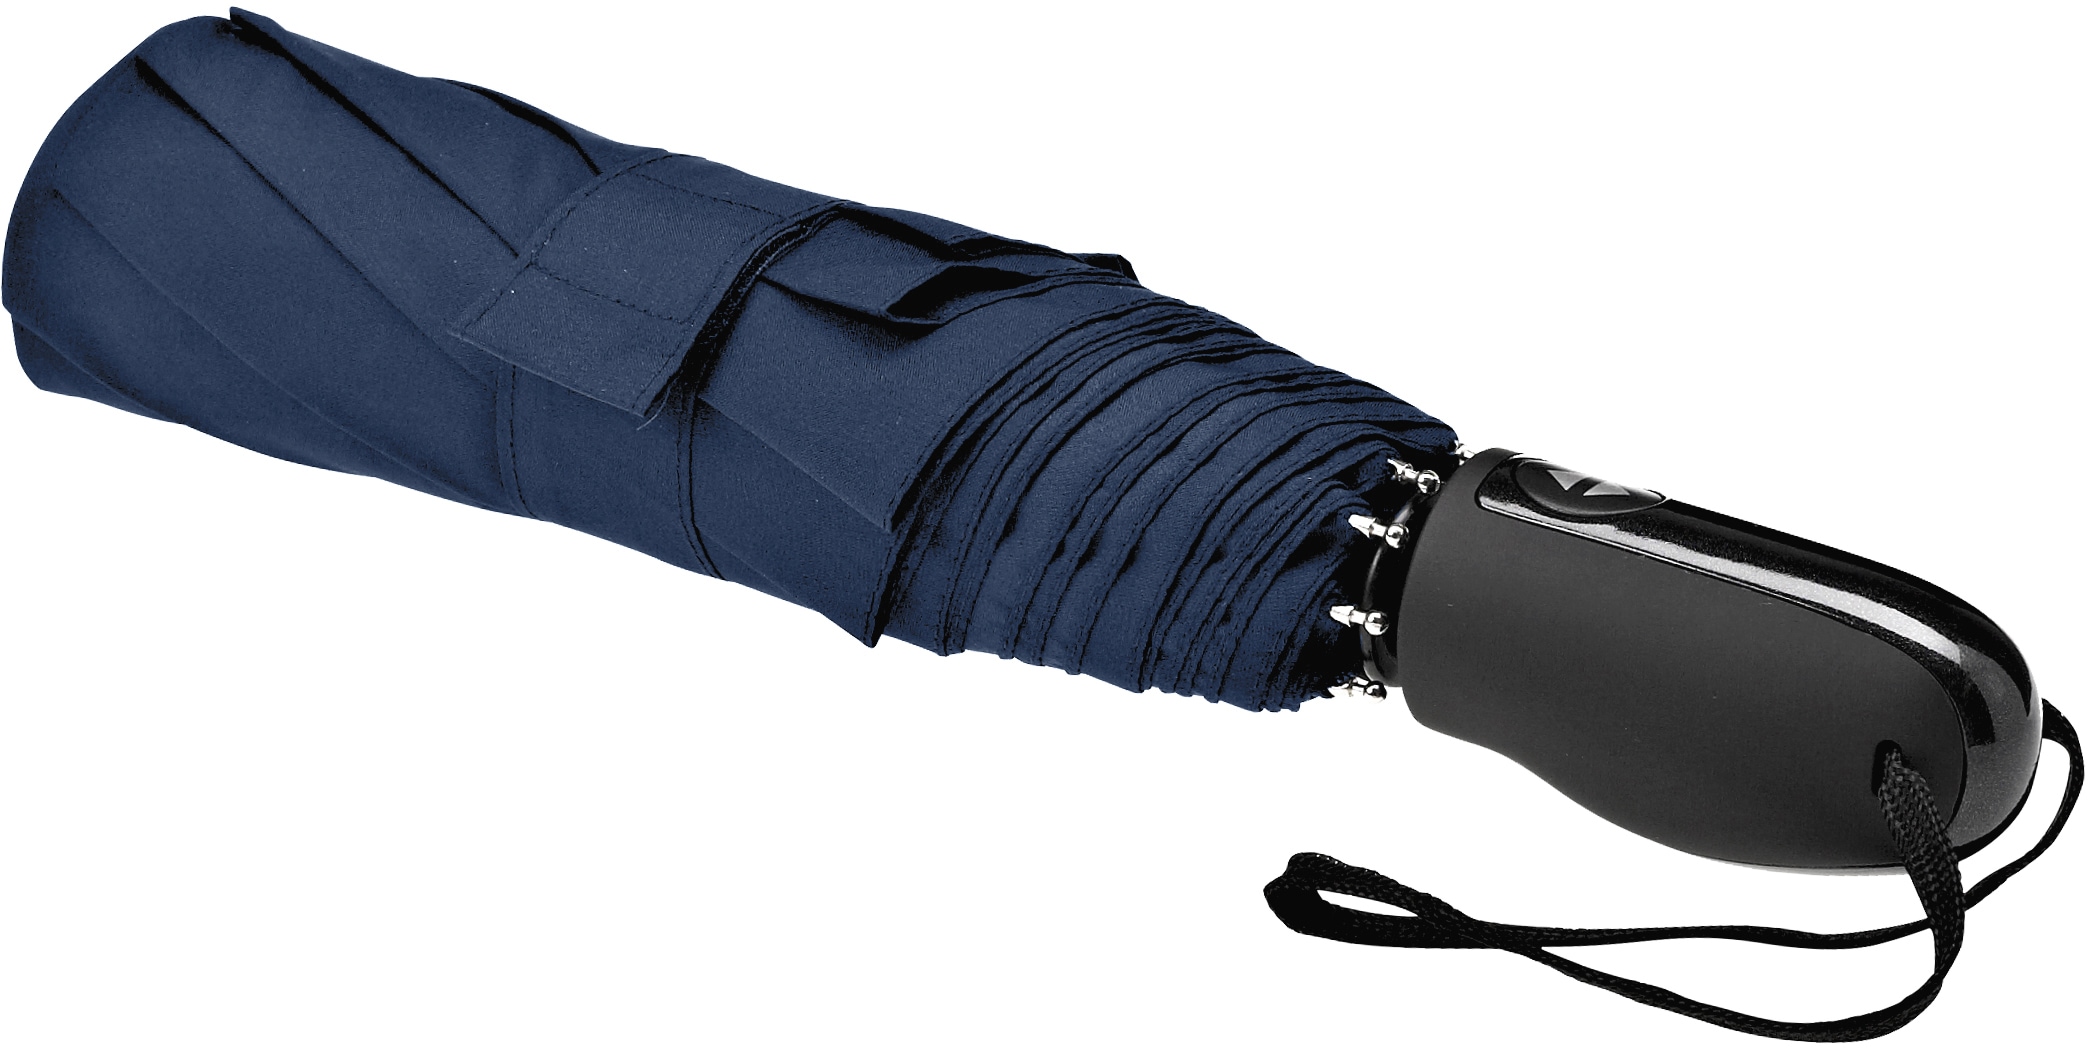 EuroSCHIRM® Taschenregenschirm »Automatik 32S7, marineblau« online kaufen |  I\'m walking